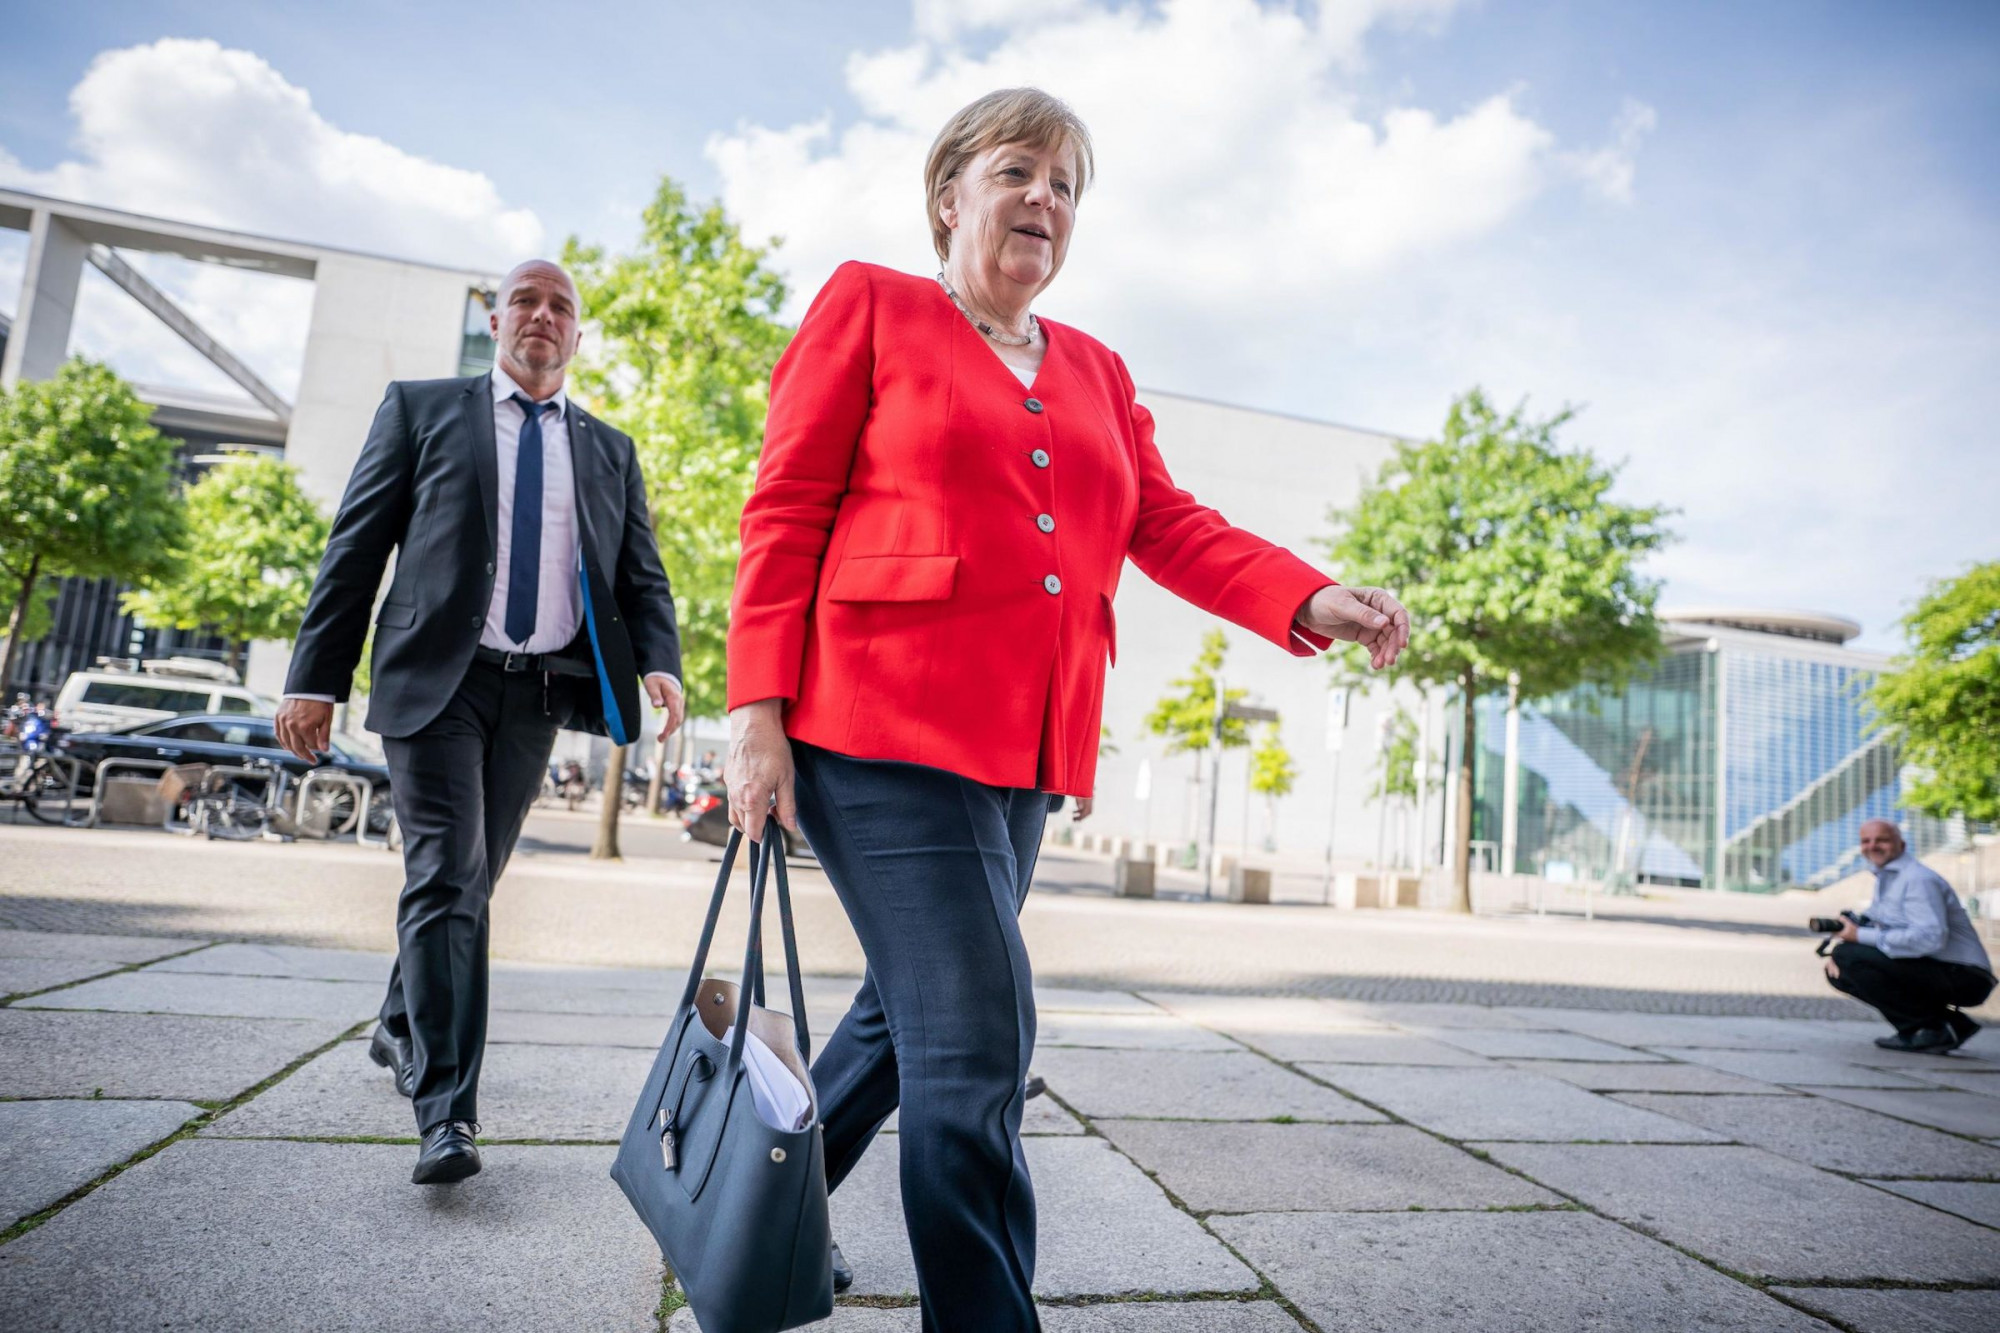 Bà Angela Merkel dự đinh sẽ dành nhiều thời gian để nghỉ ngươi sau khi nghỉ hưu - Ảnh: Michael Kappeler/Alamy